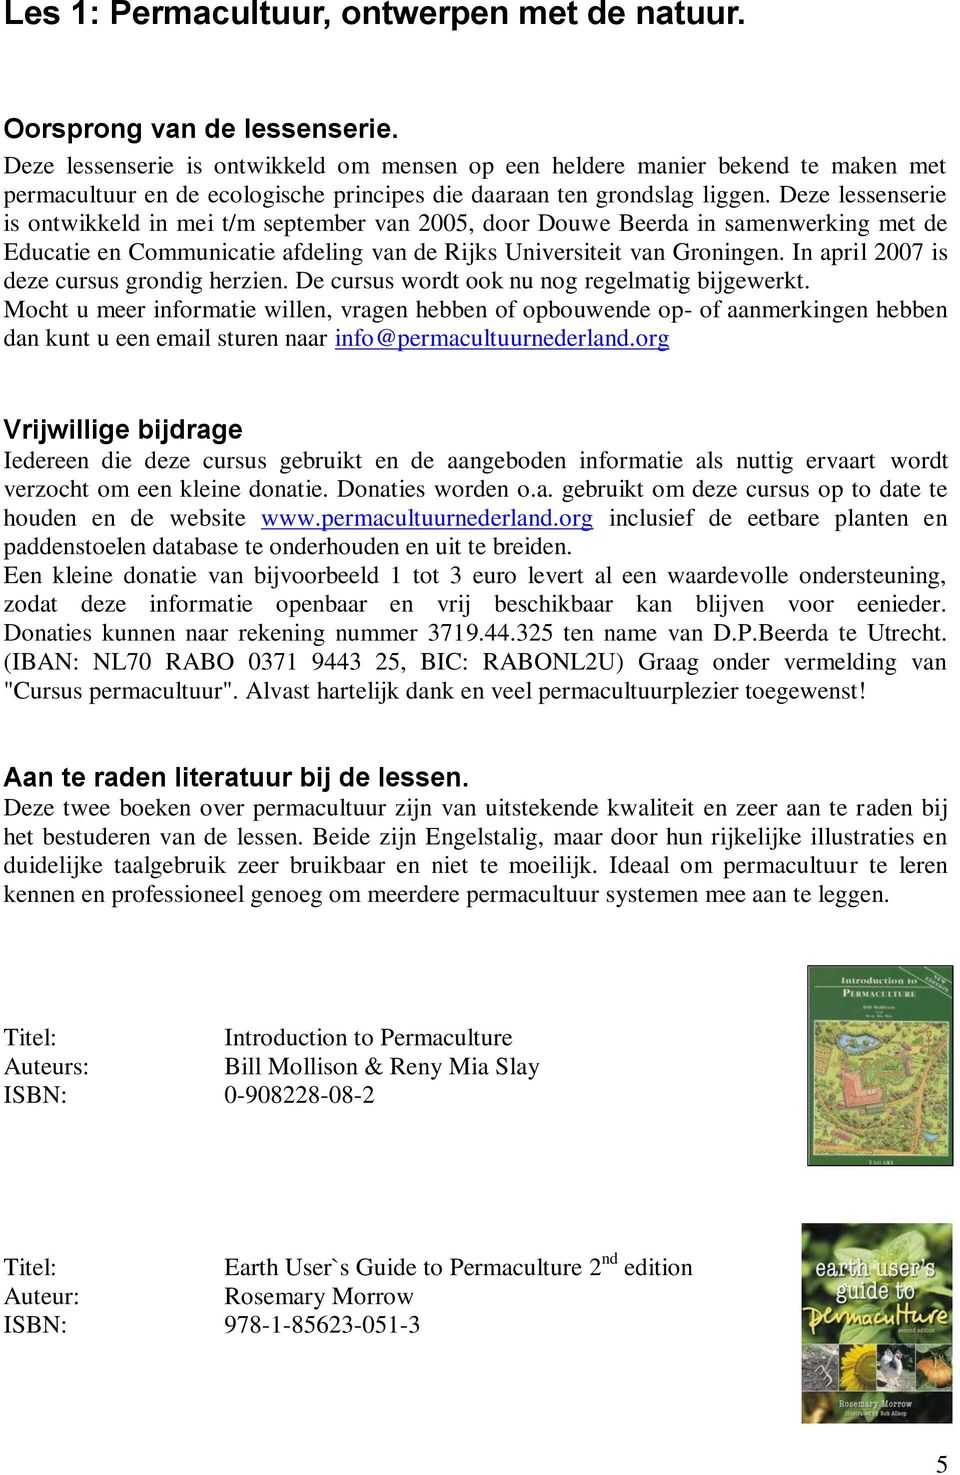 Deze lessenserie is ontwikkeld in mei t/m september van 2005, door Douwe Beerda in samenwerking met de Educatie en Communicatie afdeling van de Rijks Universiteit van Groningen.